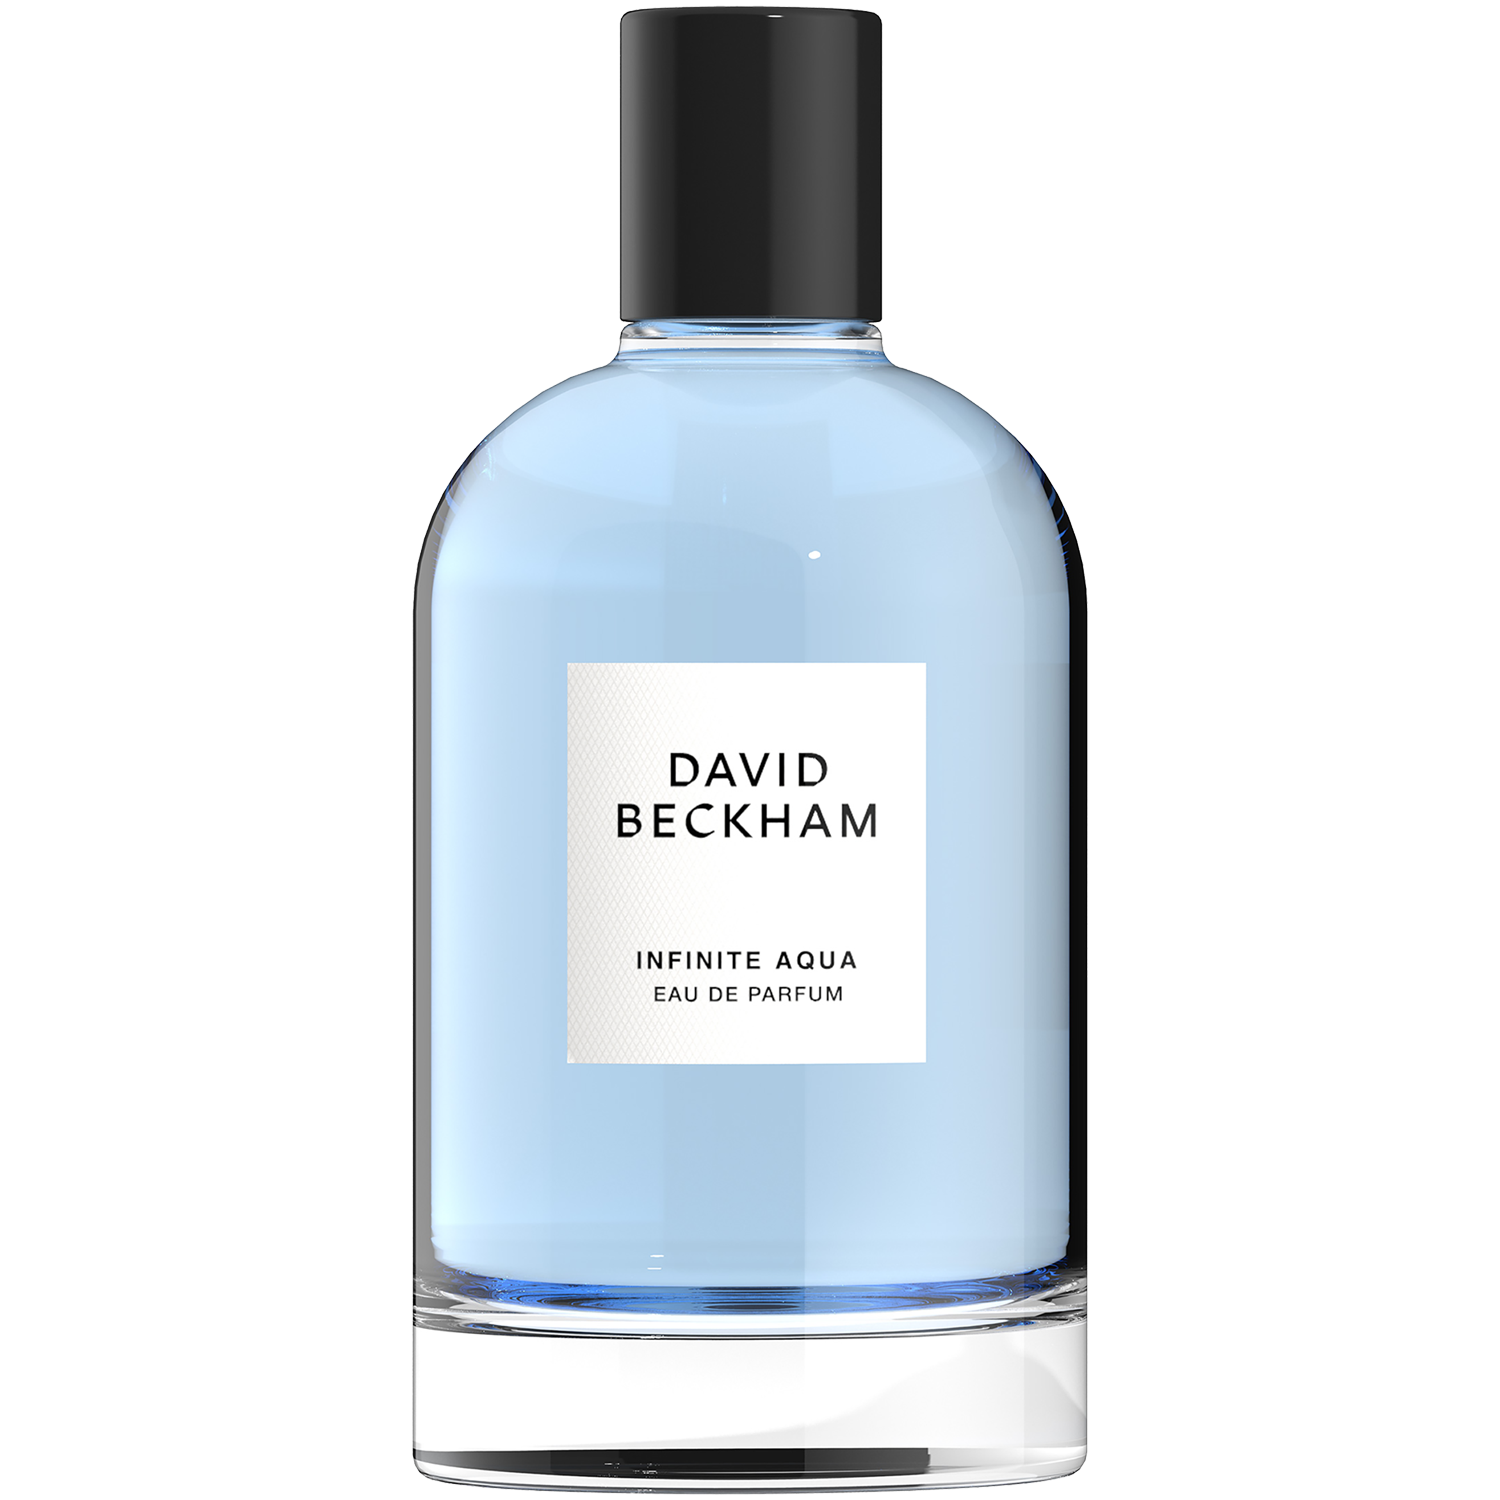 David Beckham Collection Infinite Aqua парфюмированная вода для мужчин, 100 мл